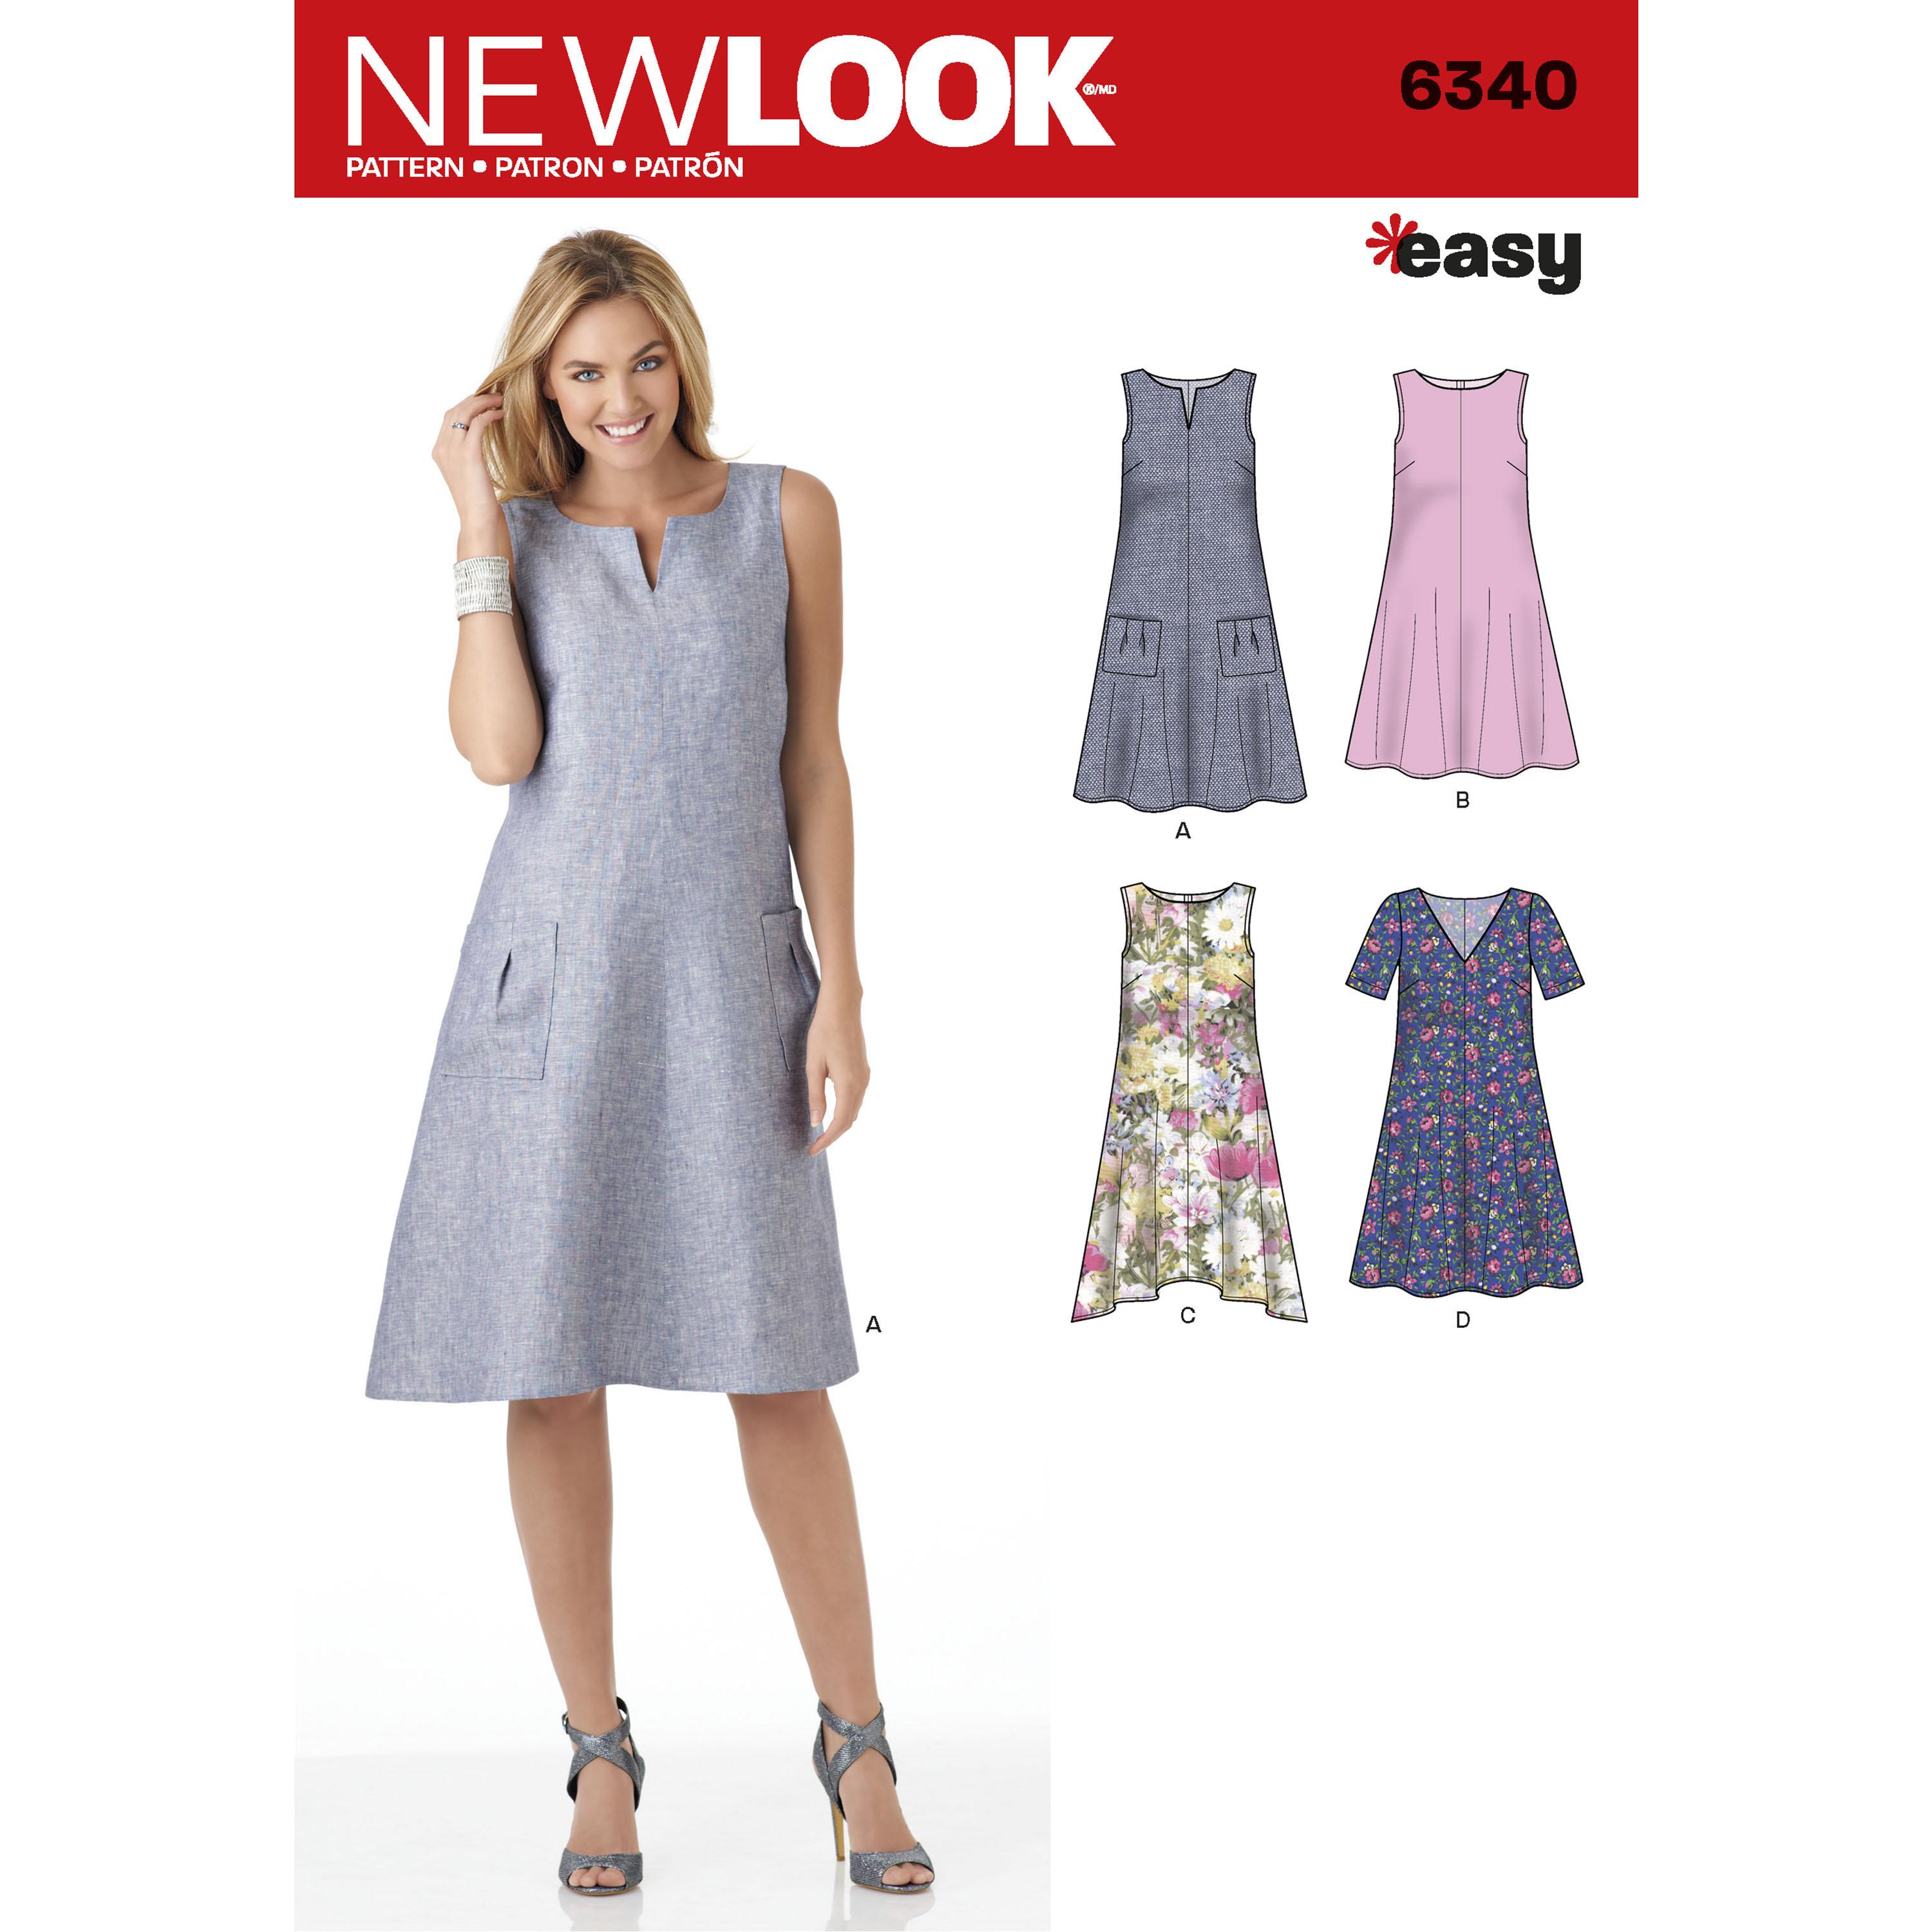 NewLook N6340 Misses' Easy Dresses